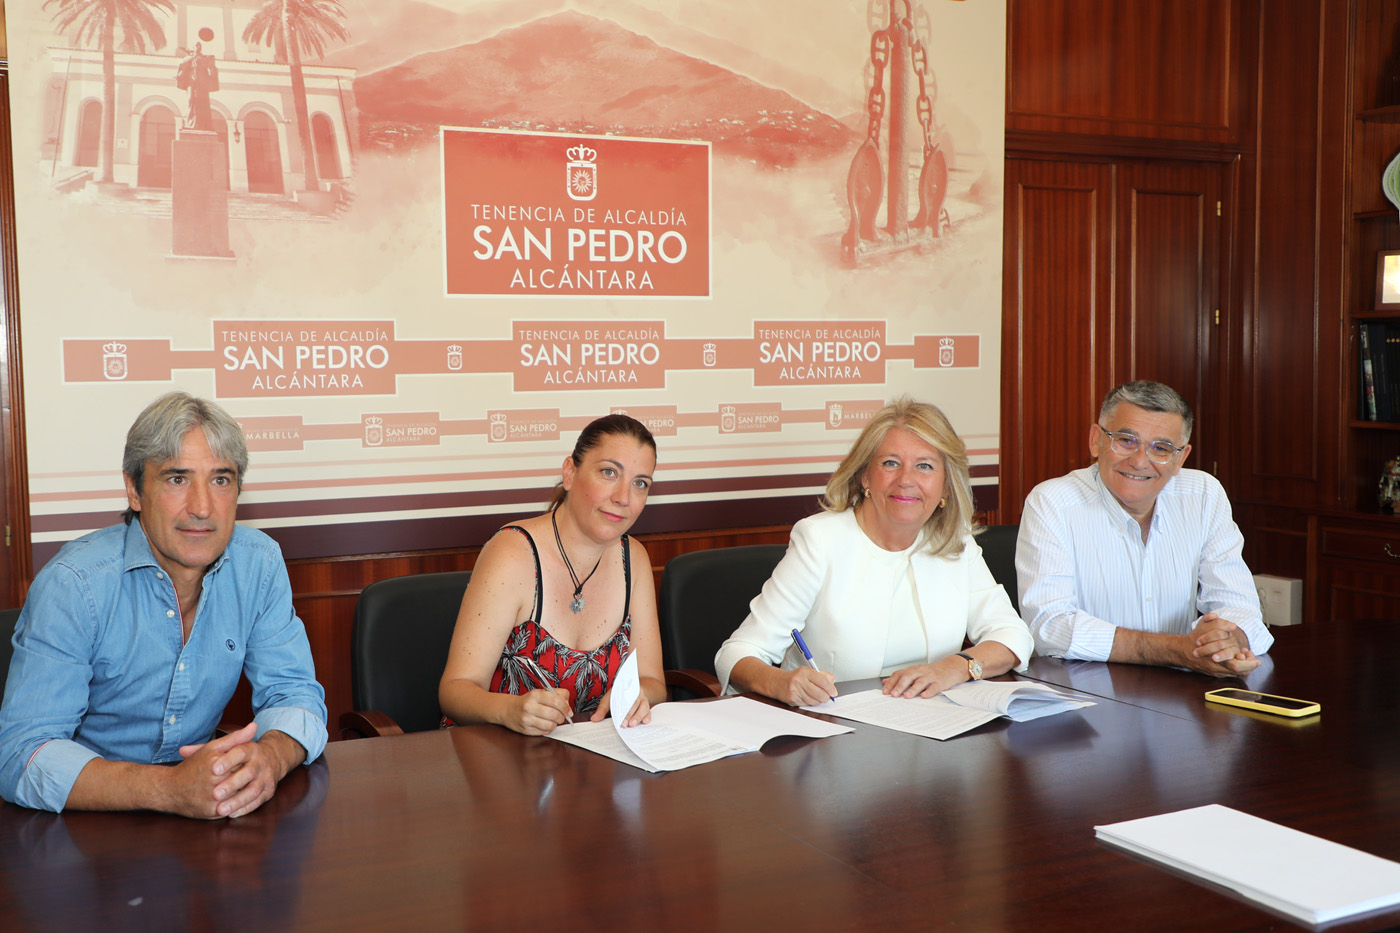 La alcaldesa firma tres convenios de colaboración con Fundatul, Aspandem y Principito, cuya dotación suma más de 170.000 euros, para contribuir a su “gran labor social” y beneficiar a cerca de 2.000 familias